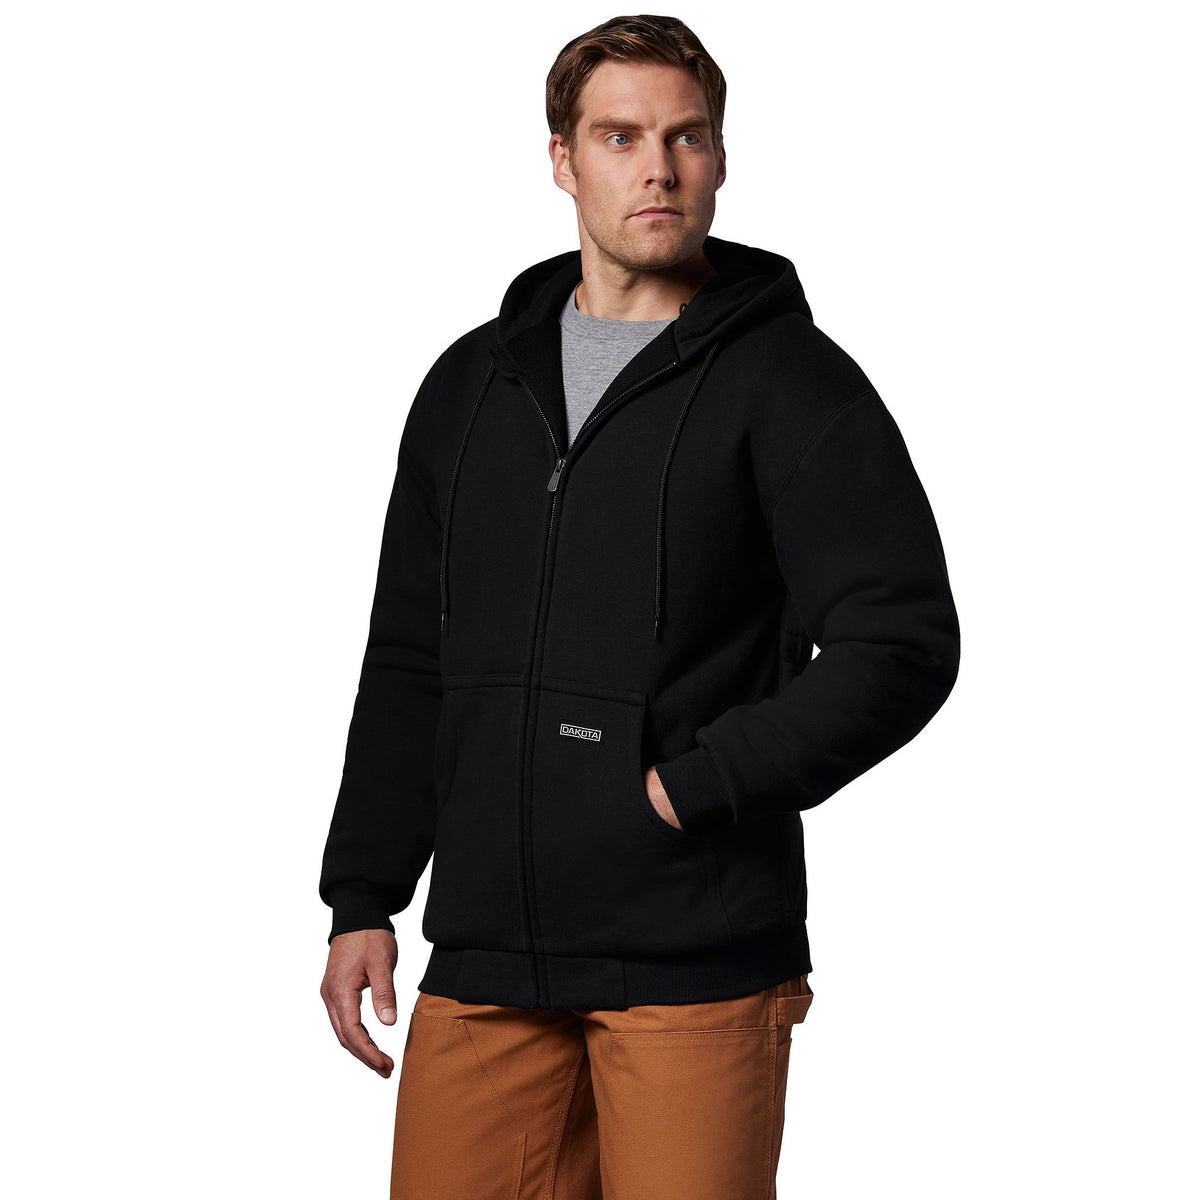 Men's T-Max Lined Full Zip Hooded Cotton Sweatshirt - Black